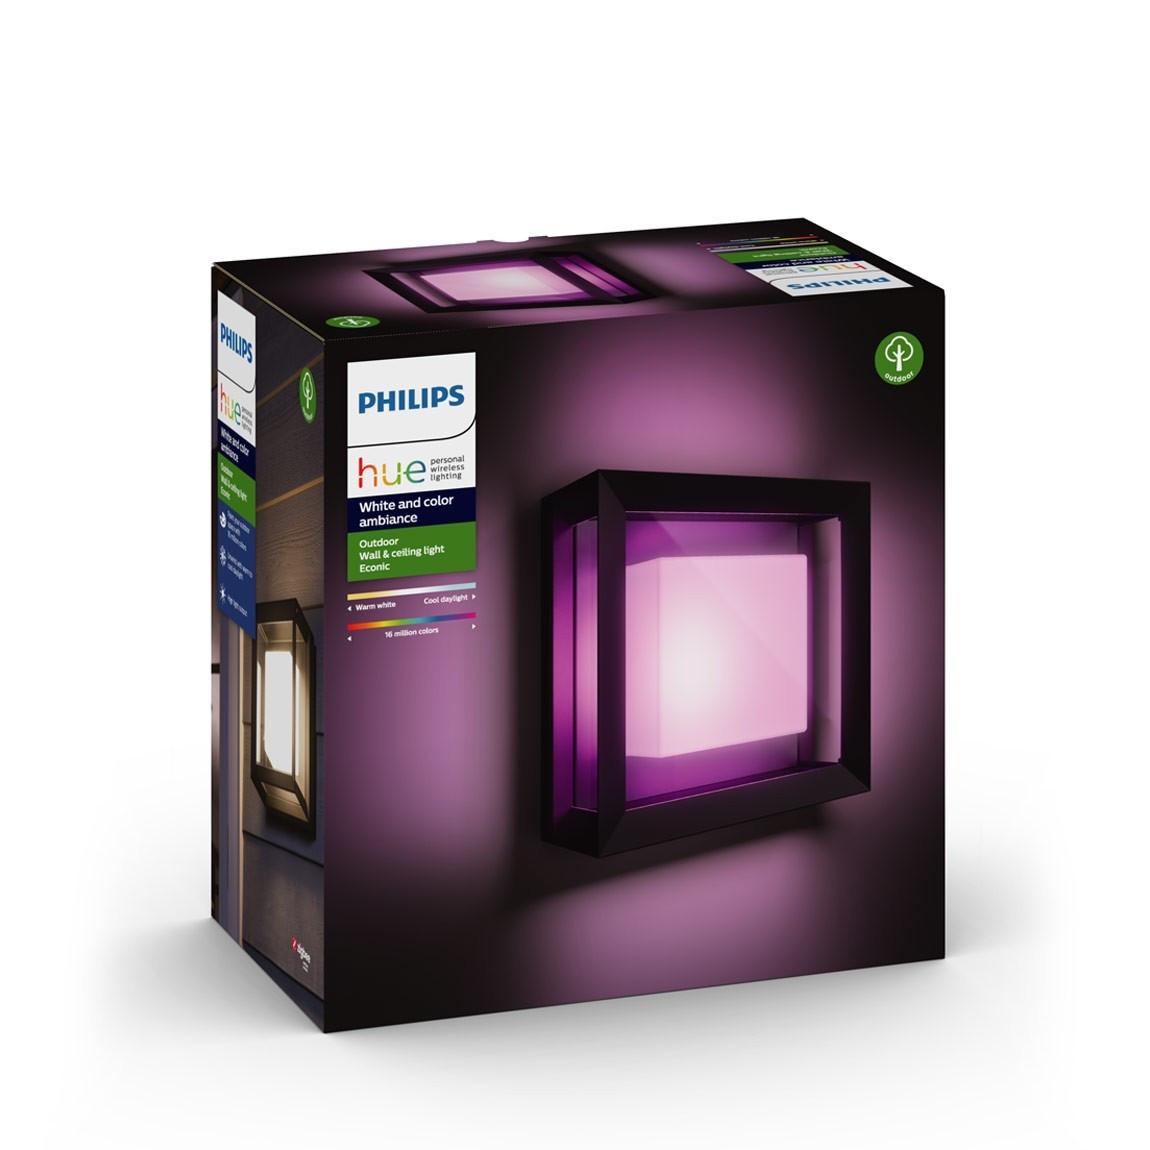 Philips Hue LED Wandleuchte Quadratisch Econic Verpackung